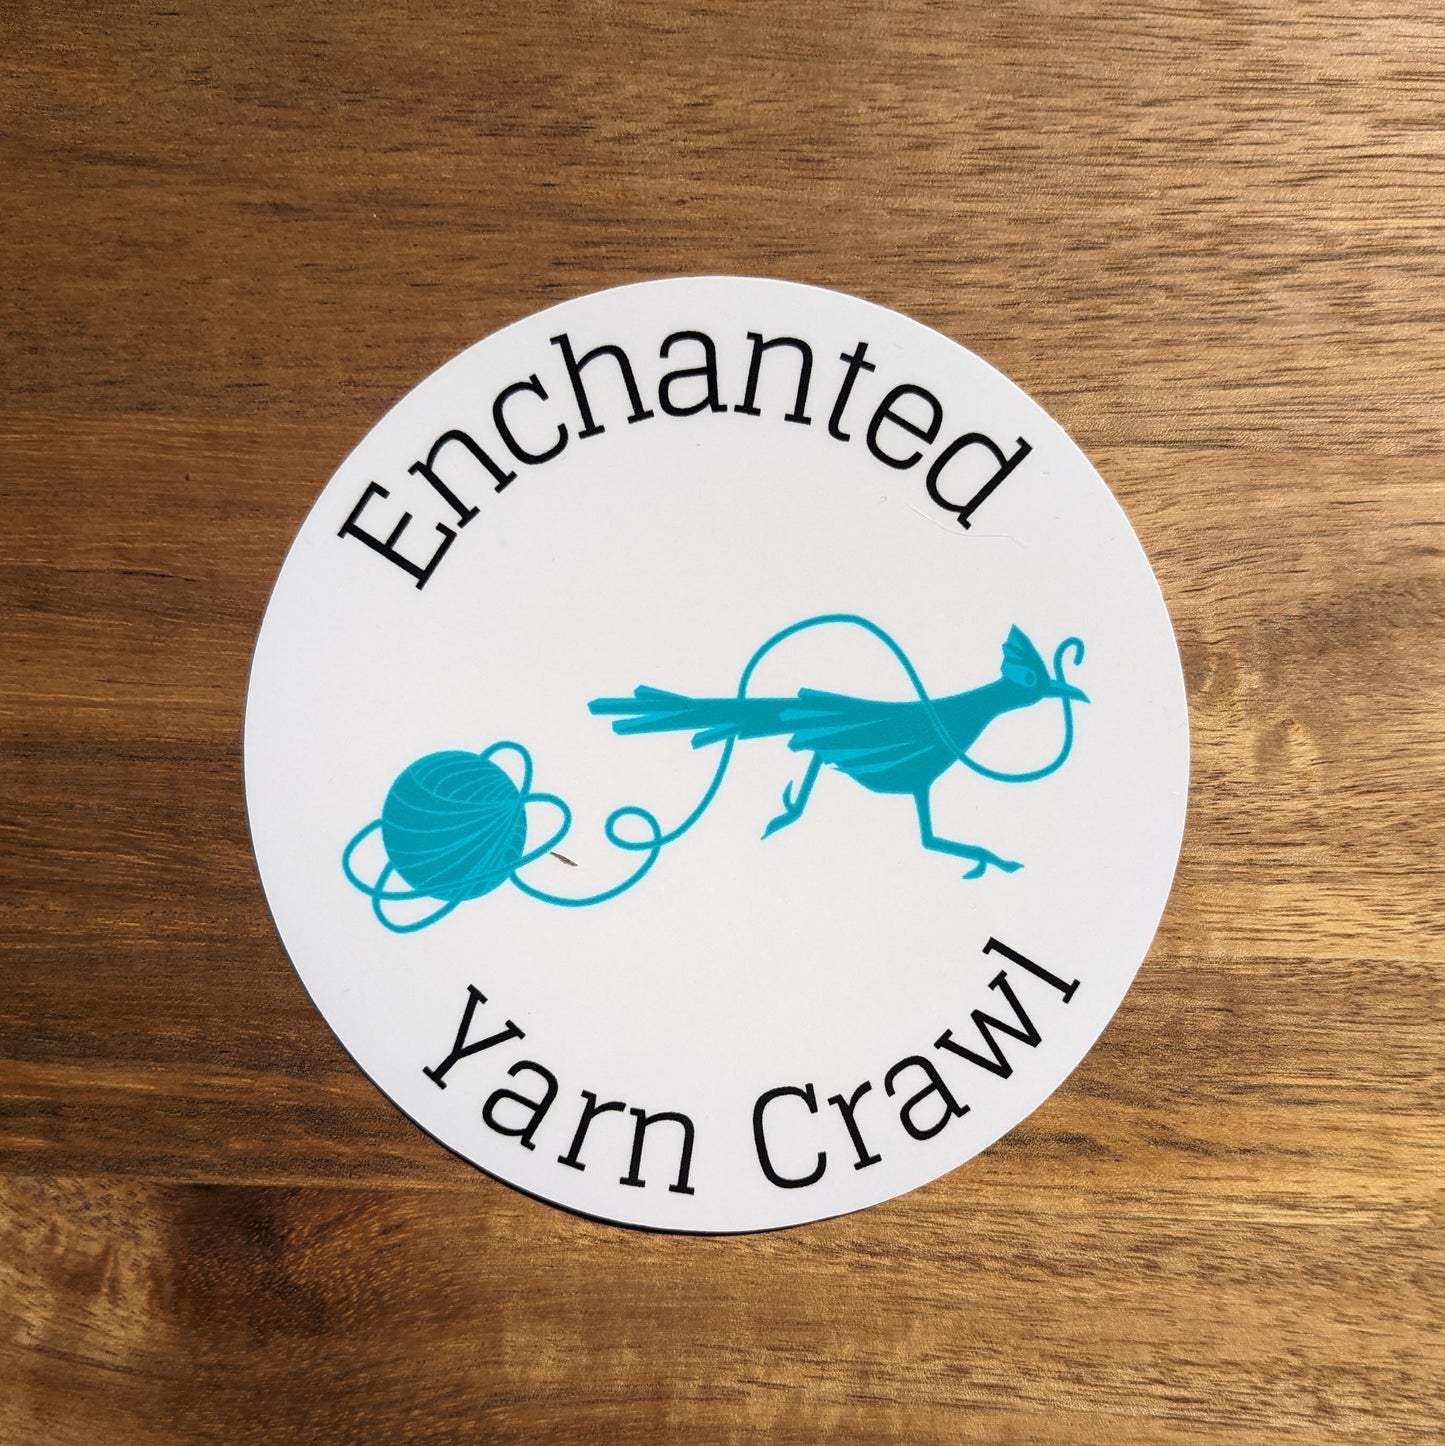 Enchanted Yarn Crawl Sticker